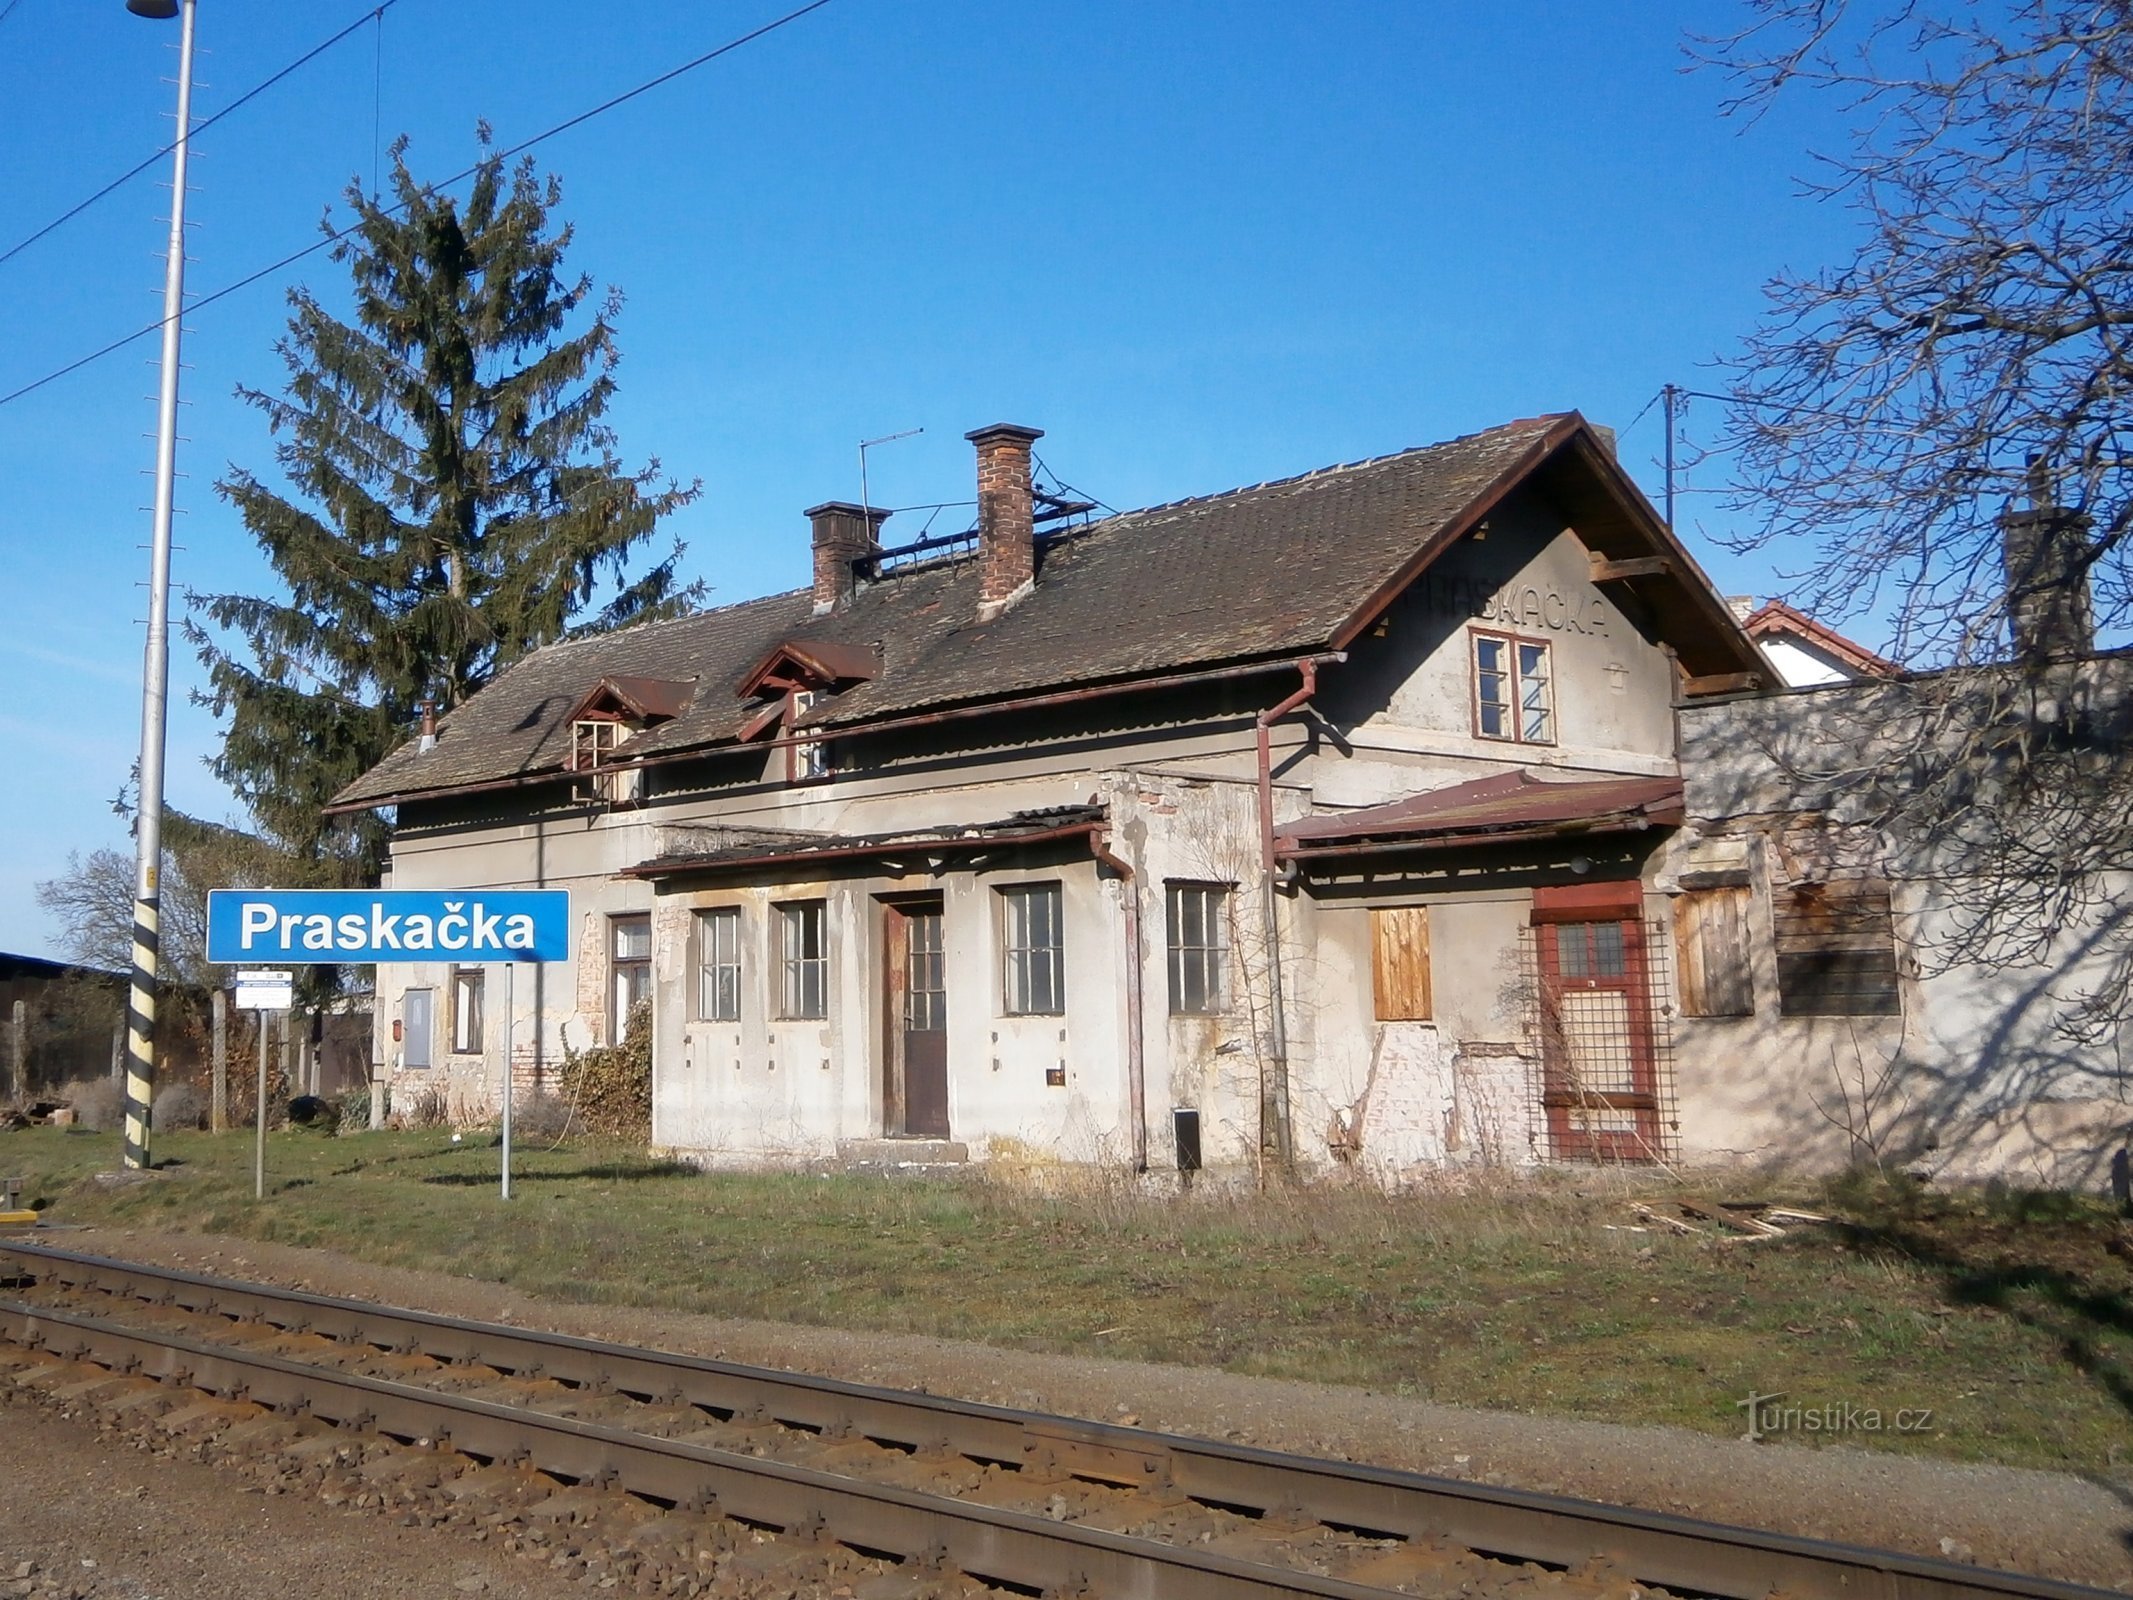 Stara željeznička stanica u Praskačkoj